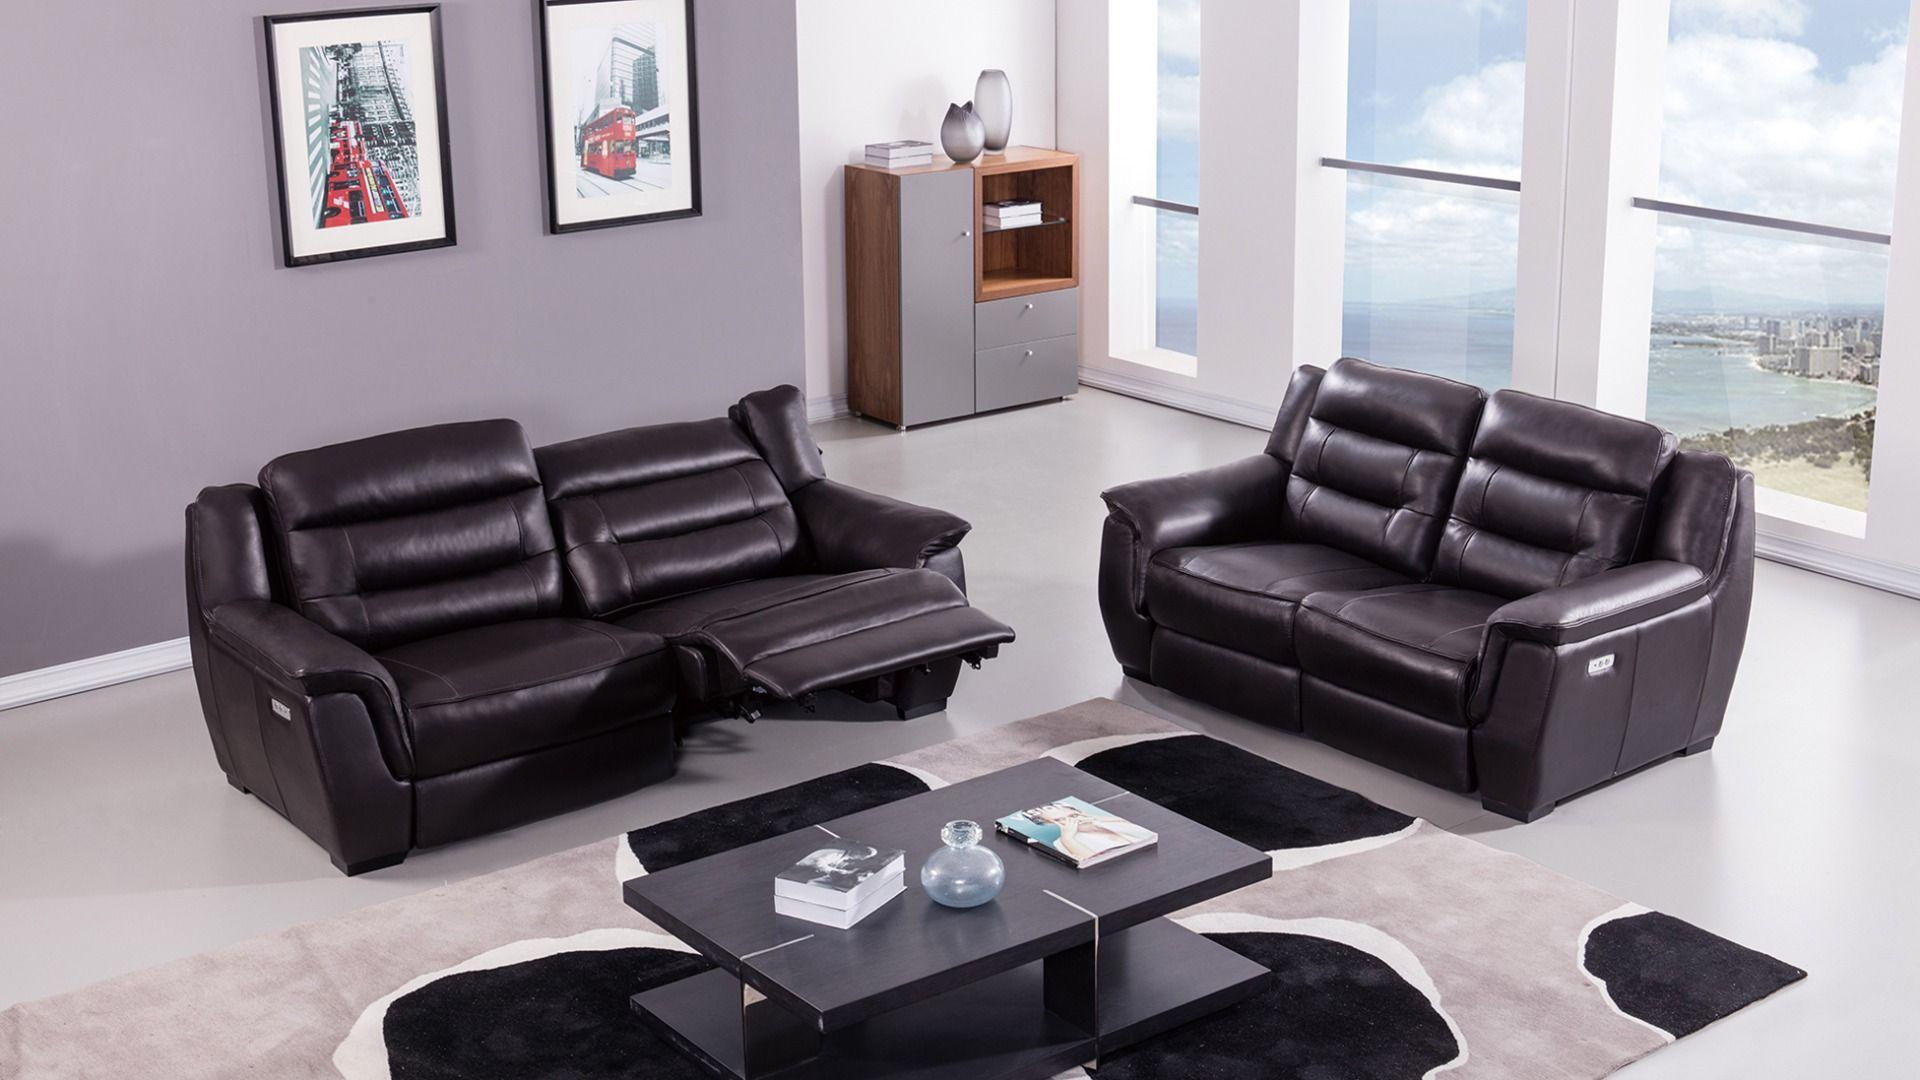 

    
Dark Brown Full Italian Leather Recliner Sofa Set 2Pcs EK089-DB American Eagle
